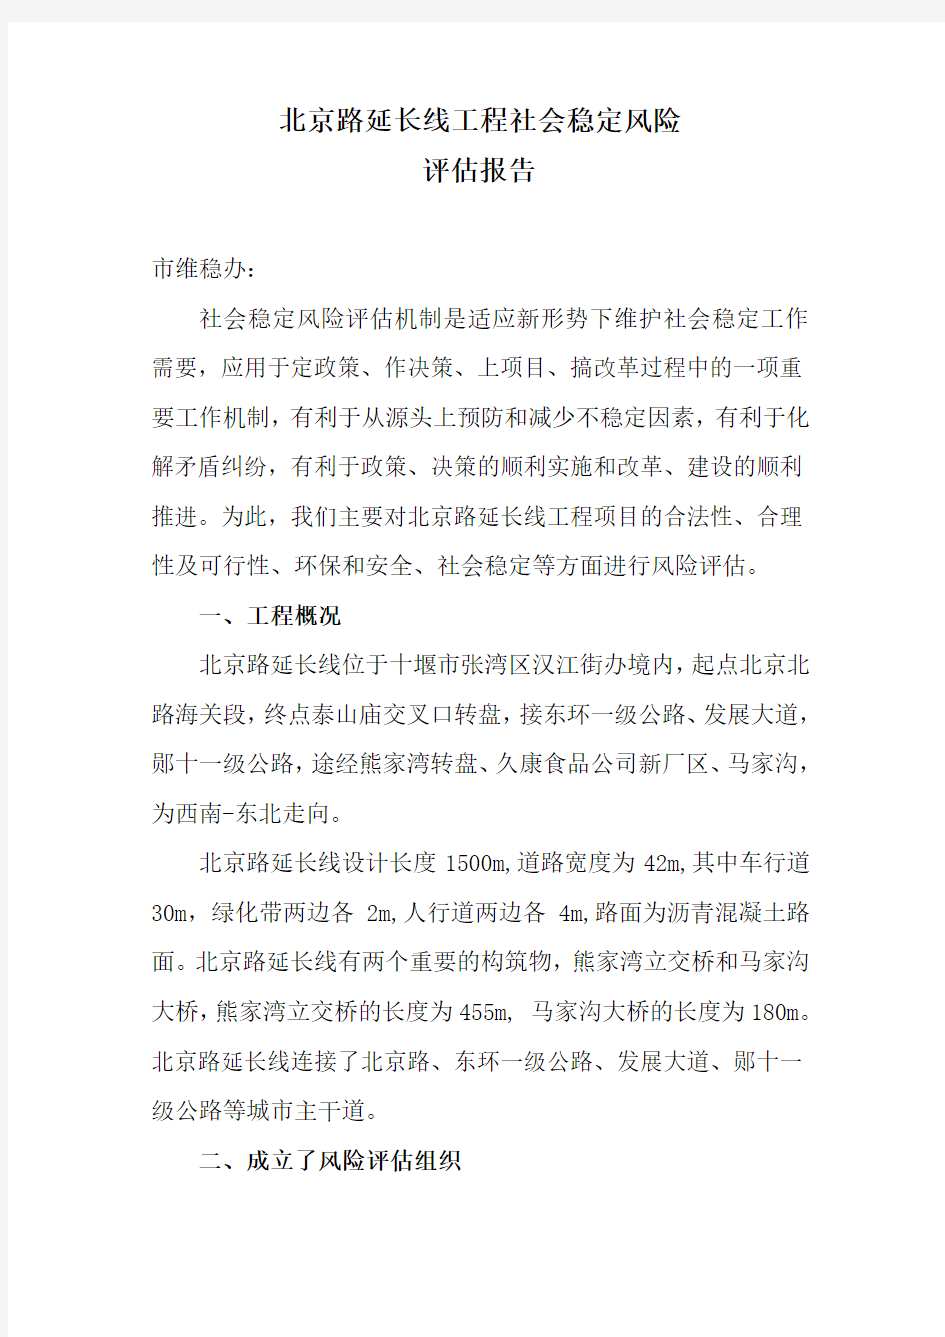 北京北路延长线拆迁安置社会稳定风险评估报告